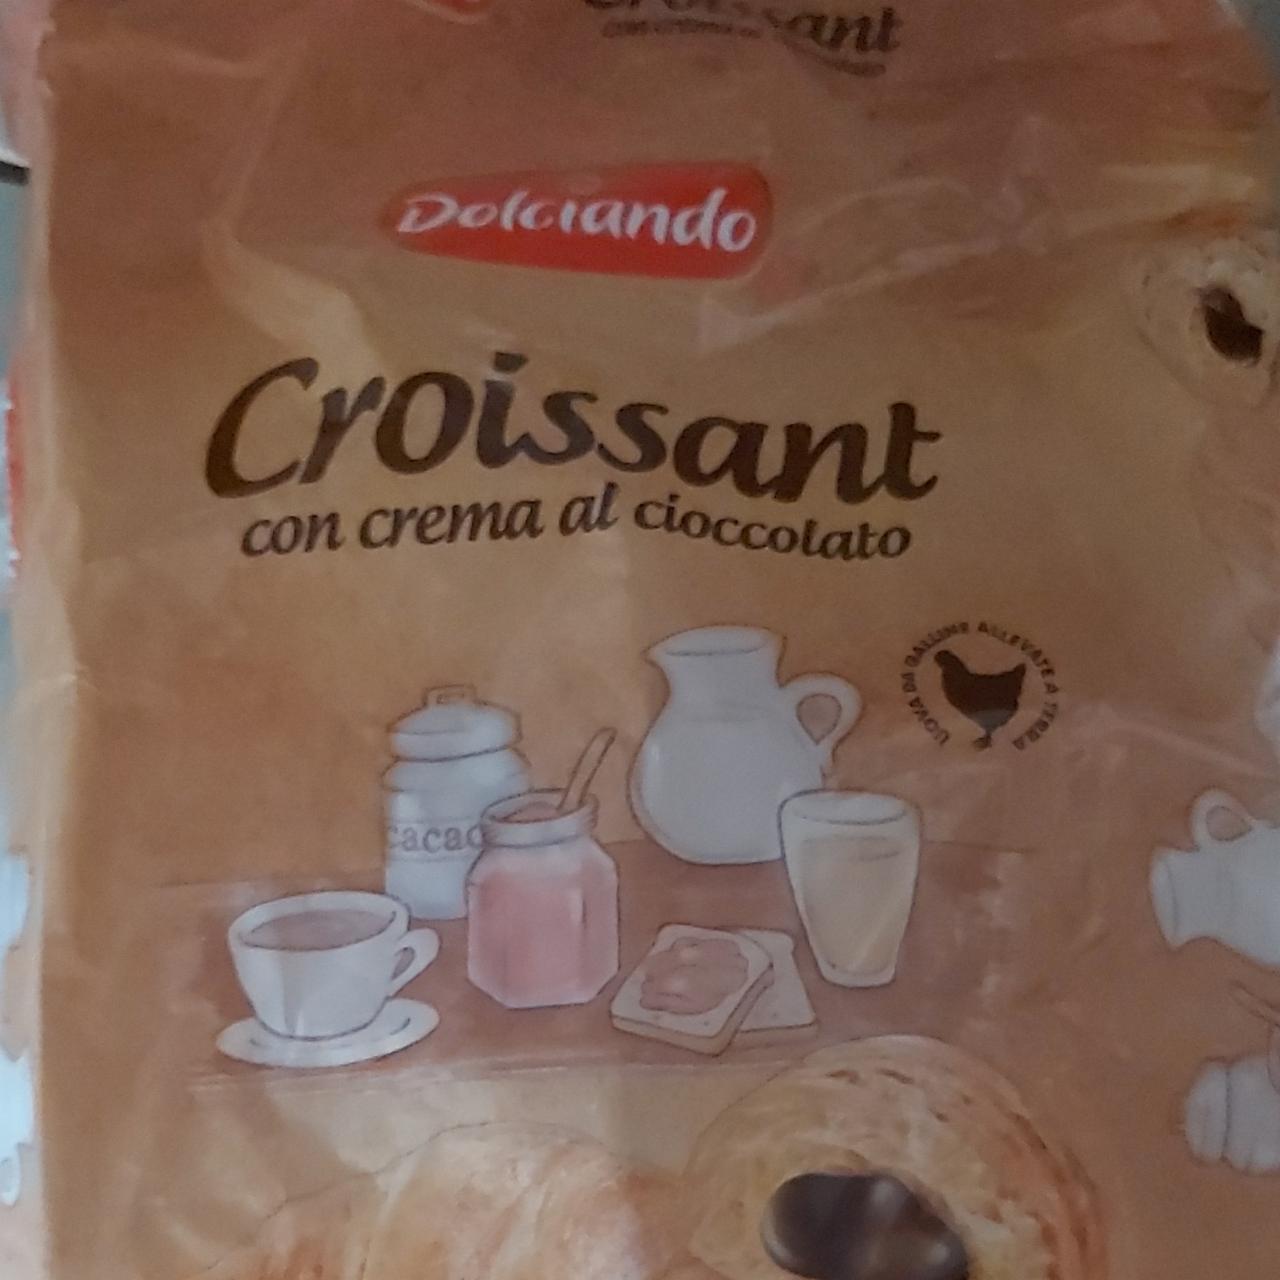 Фото - Croissant con crema al cioccolato Dolciando